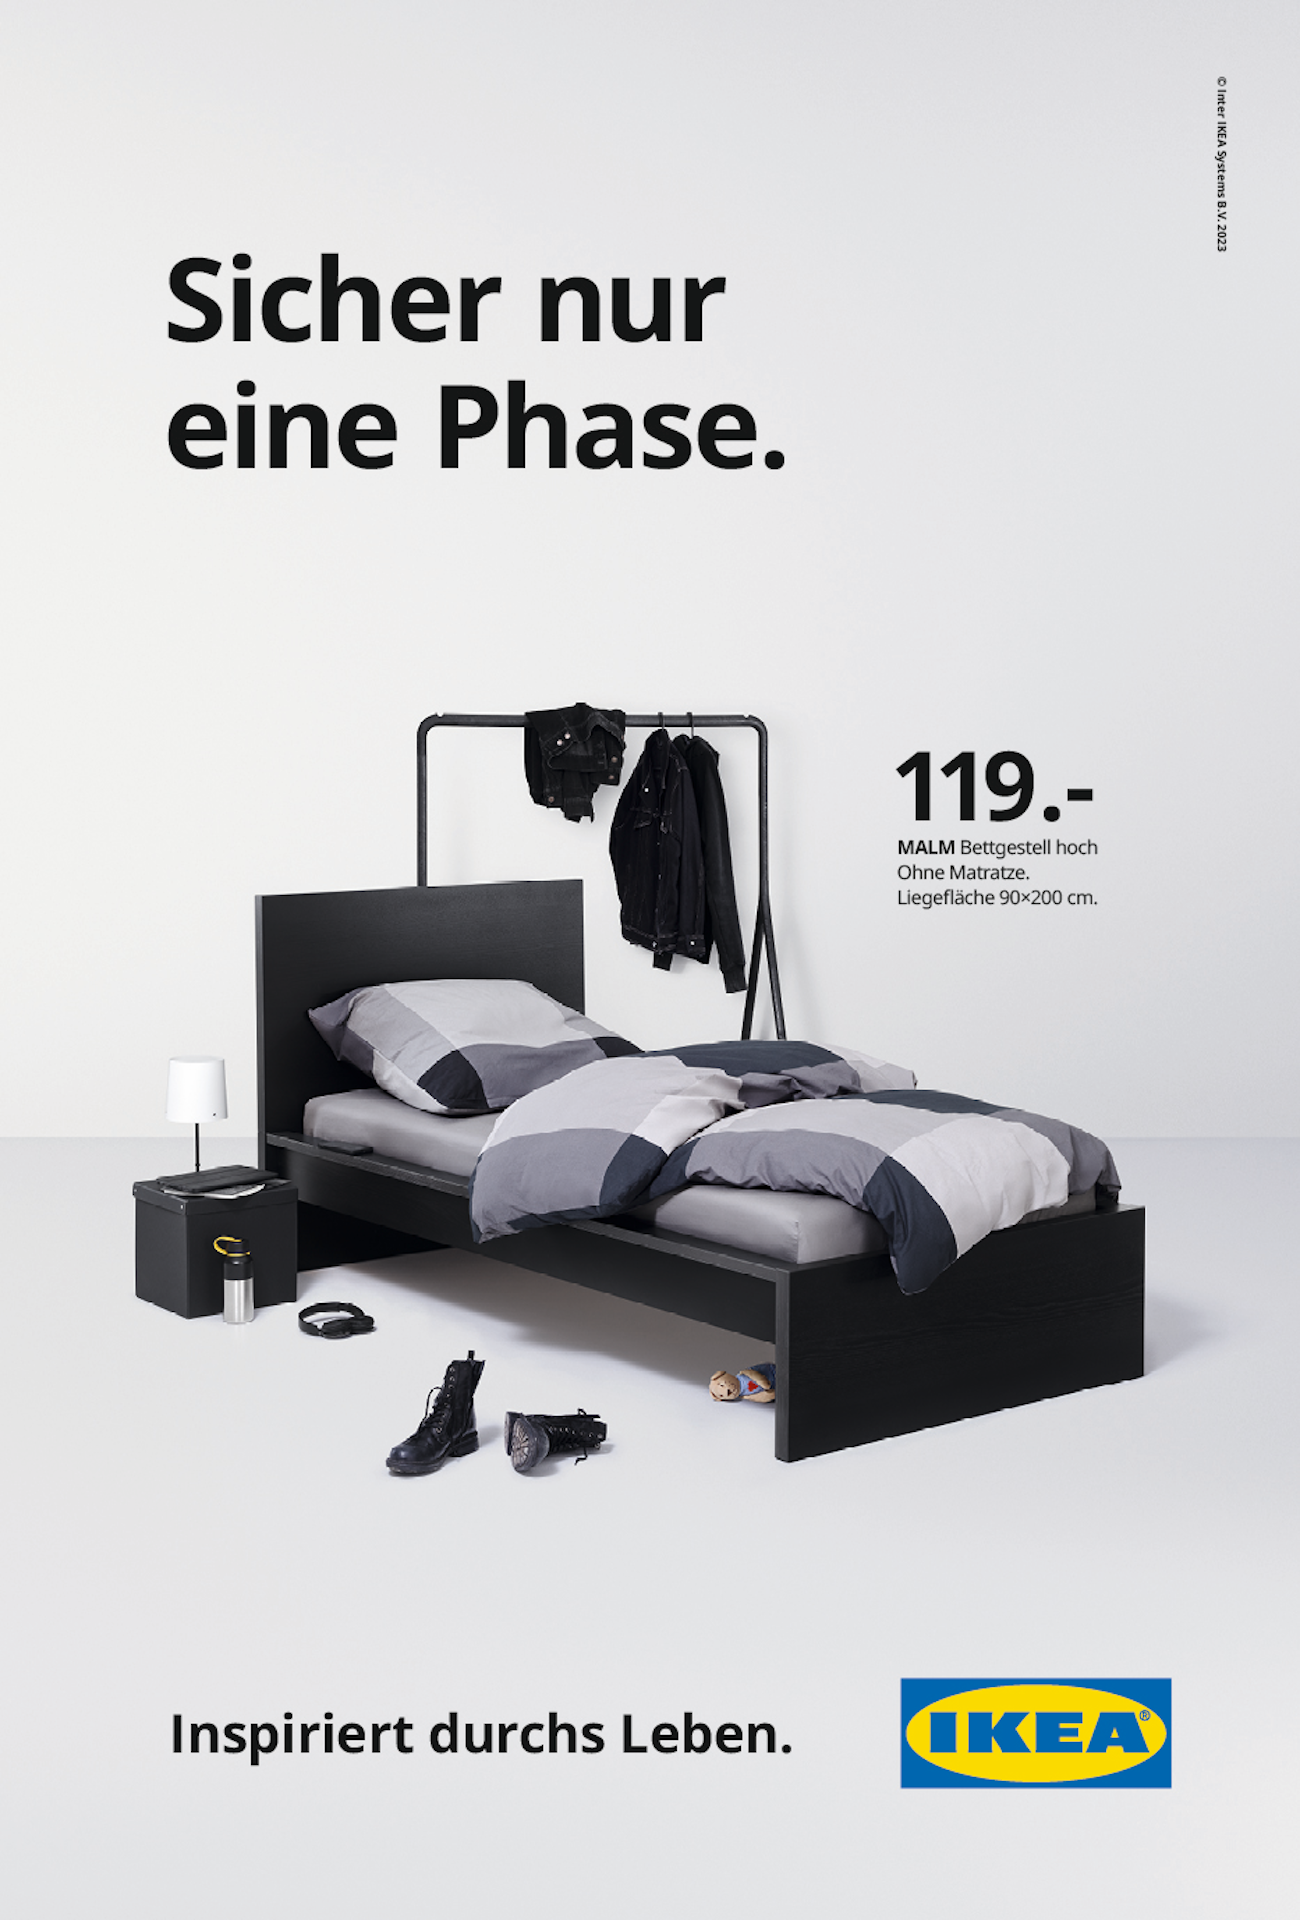 Ikea-Plakat mit Einrichtungsgegenständen und Schrift: Sicher nur eine Phase. Inspiriert durchs Leben.